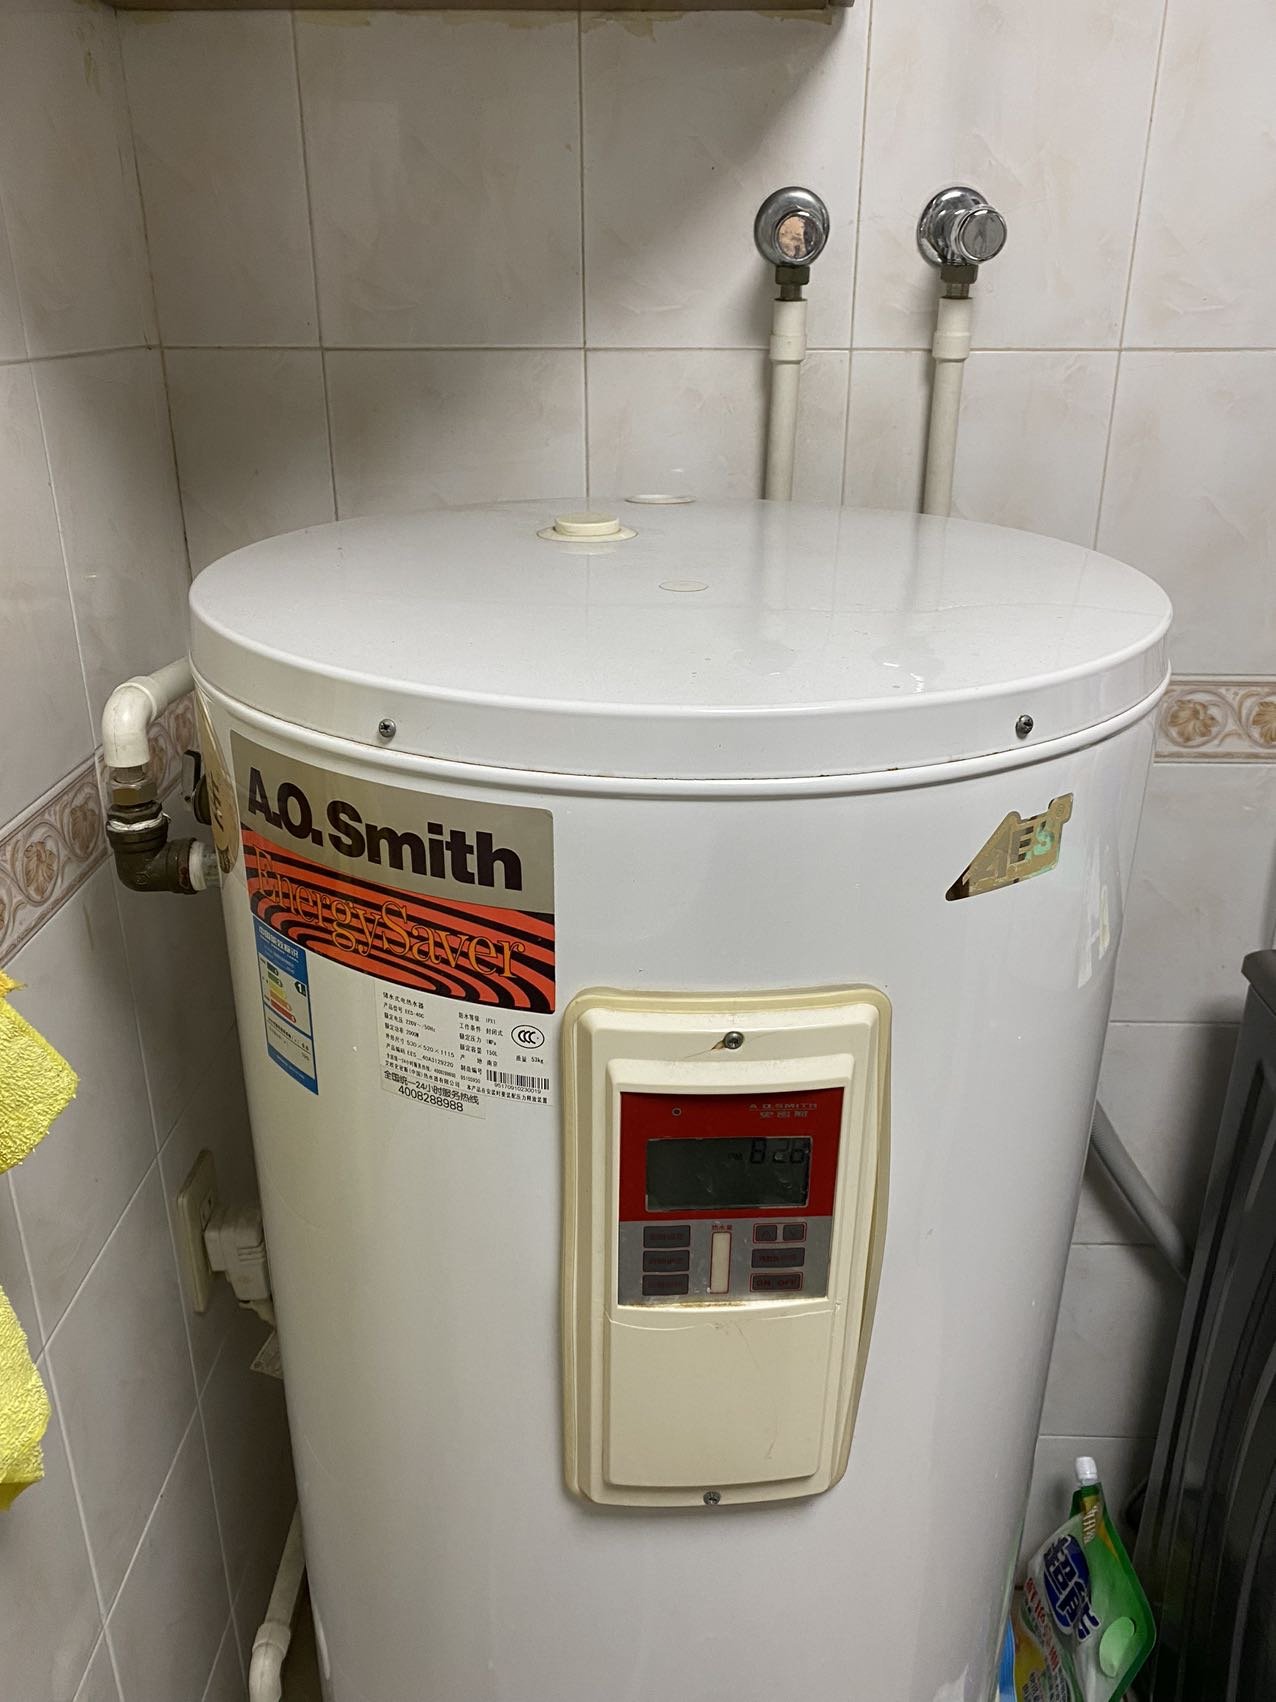 瑞美立式热水器电家用落地储水式120升洗澡机淋浴恒温速热一级能效上门安装 智能款CSFL120-05AK20 2400w晒单图